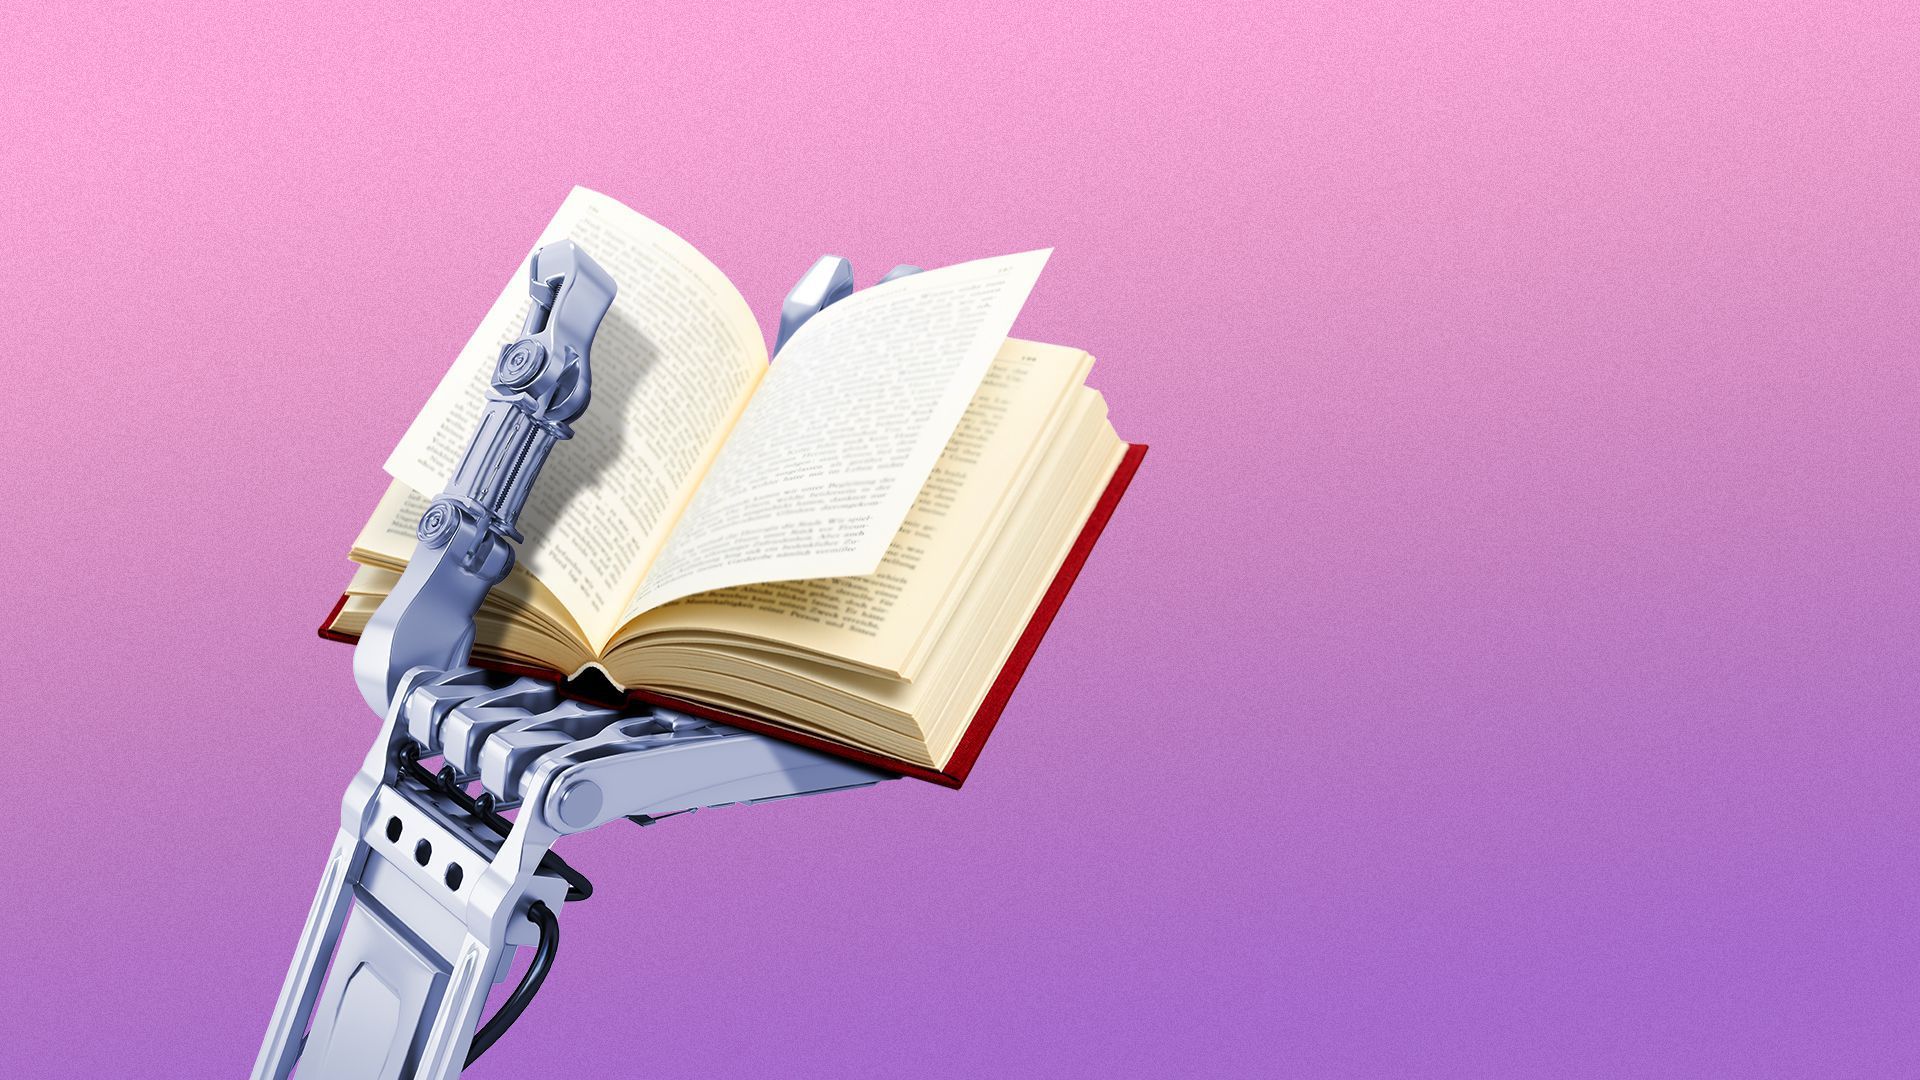 Robot reading book